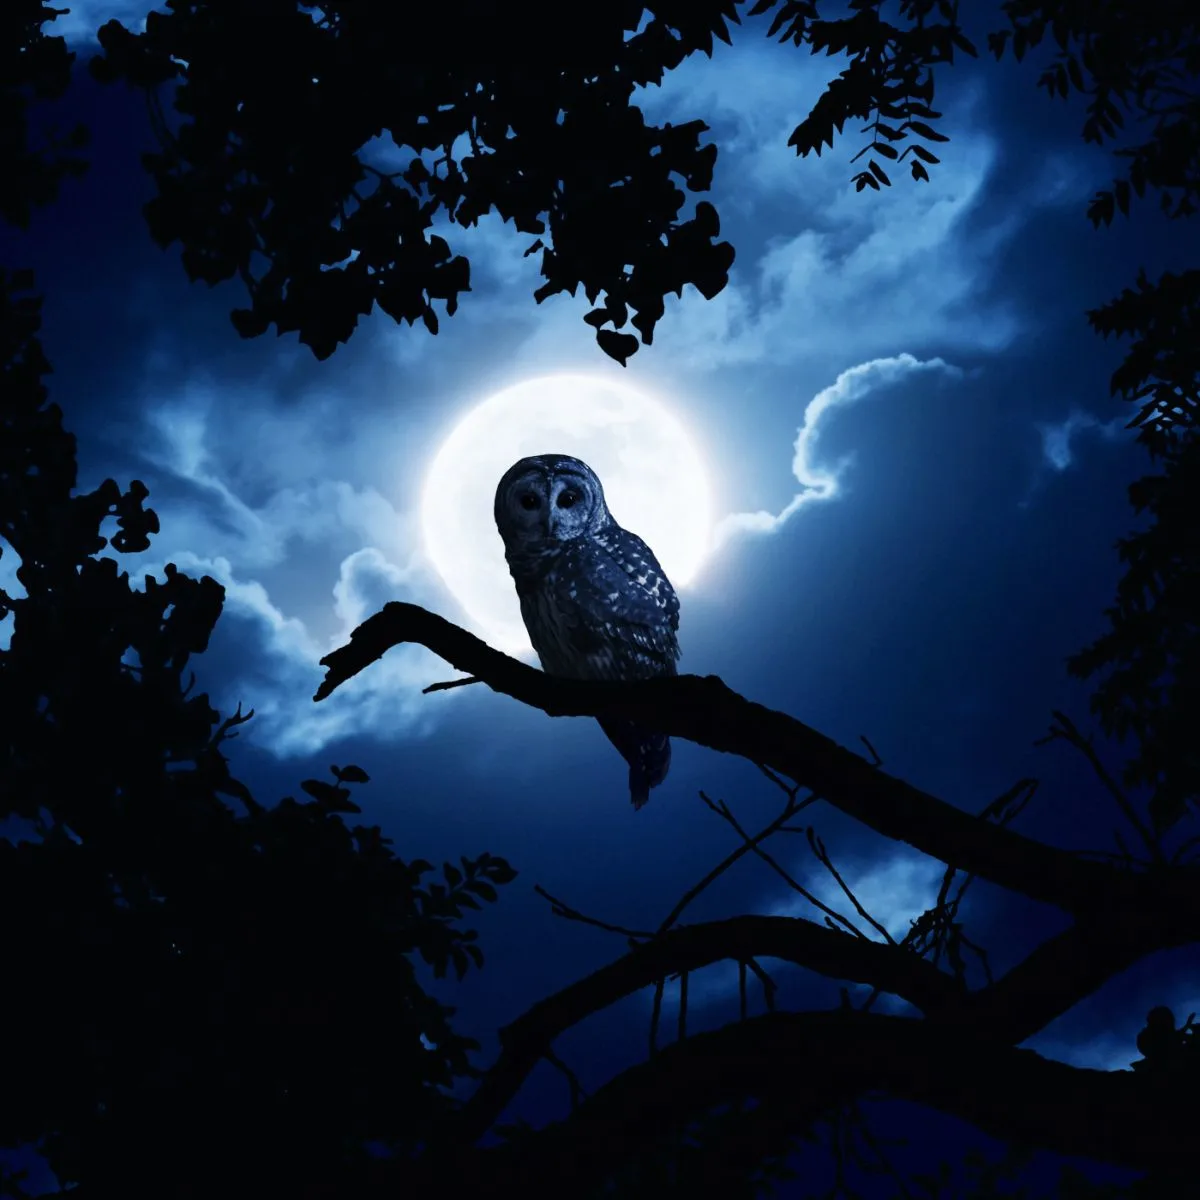 Owl Hooting At Night Spiritual Meaning